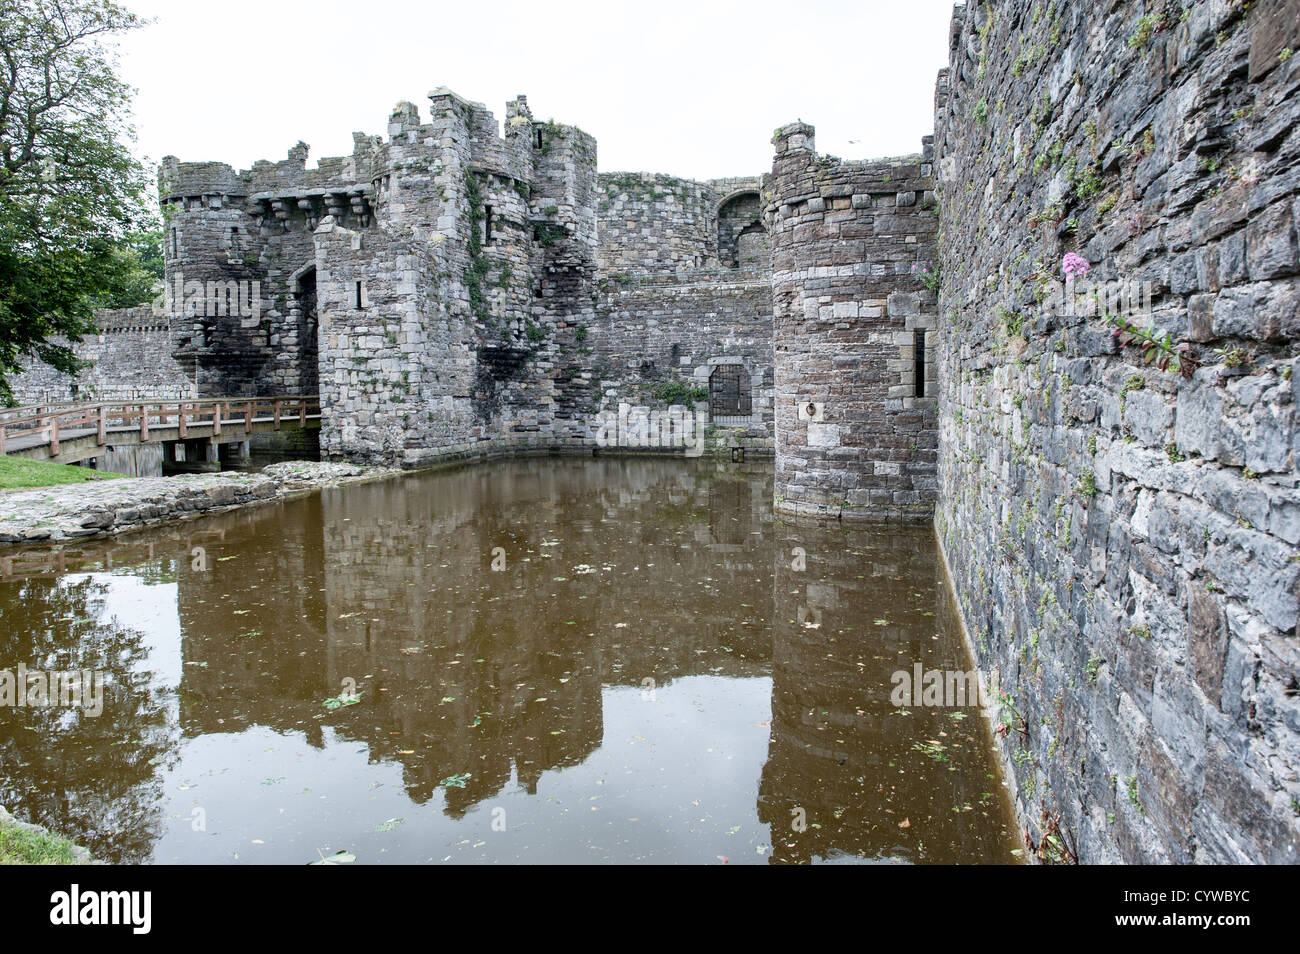 BEAUMARIS, Galles - il fossato e la porta del castello di Beaumaris sull'isola di Anglesey della costa settentrionale del Galles, Regno Unito. Il castello risale al 13th ° secolo ed è uno dei numerosi commissionati da Edoardo I. La pittoresca cittadina costiera di Beaumaris, situata sull'isola di Anglesey, in Galles, offre ai visitatori uno sguardo alla ricca storia della zona, con il suo castello medievale, l'architettura vittoriana e il panoramico lungomare. Il Beaumaris è stato dichiarato patrimonio dell'umanità dall'UNESCO e continua a affascinare i viaggiatori con i suoi monumenti ben conservati e le sue splendide bellezze naturali. Foto Stock